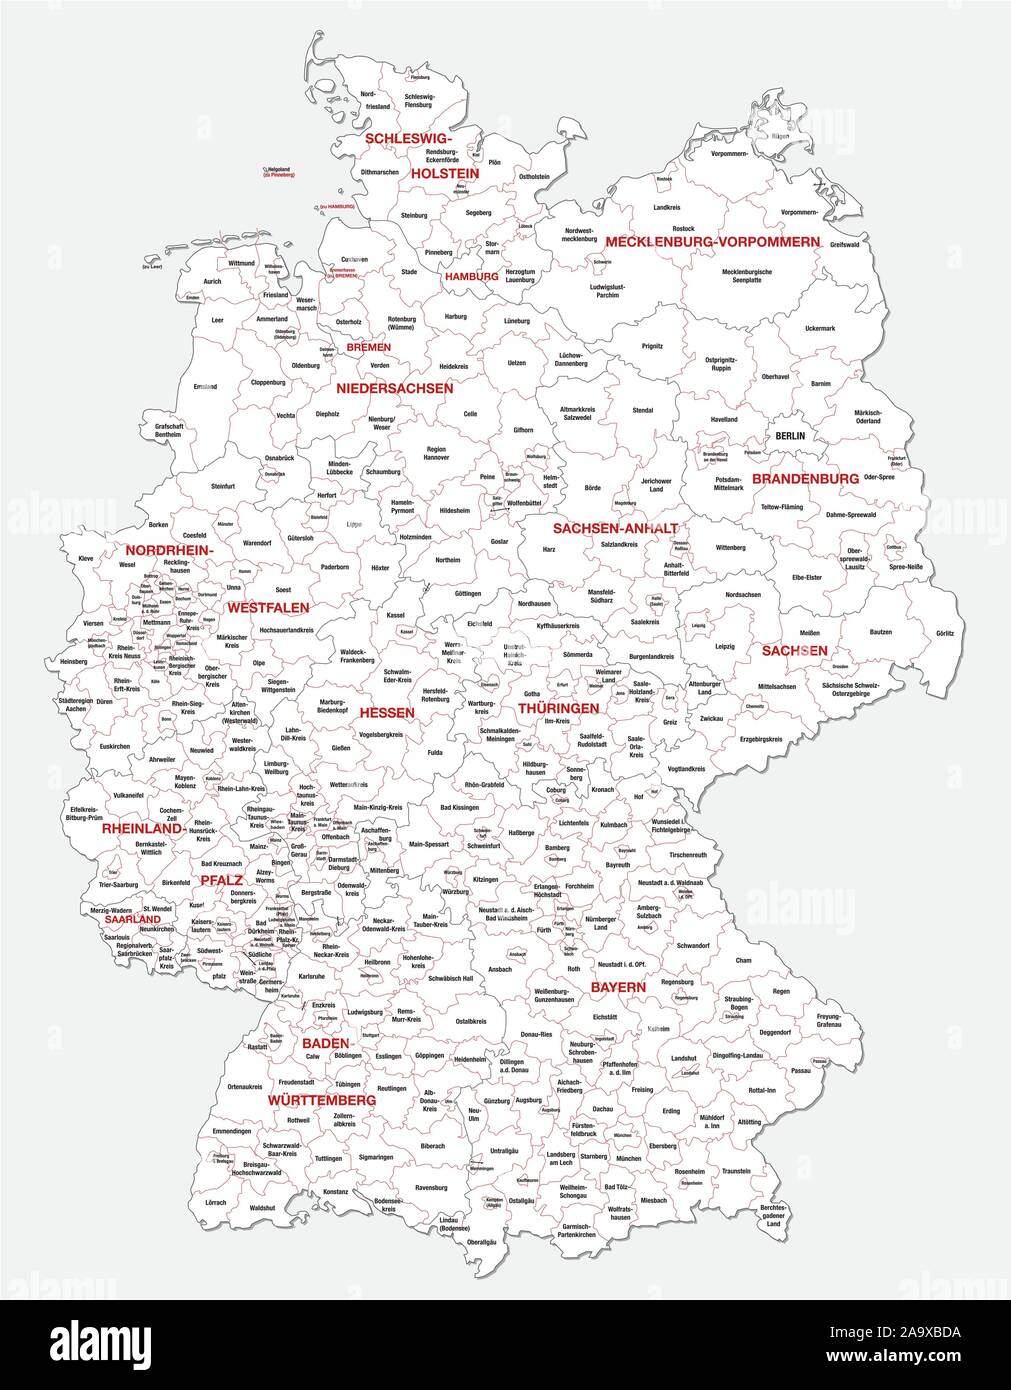 La carte administrative et politique de l'Allemagne nouvellement révisée de 2019 en noir et blanc Illustration de Vecteur